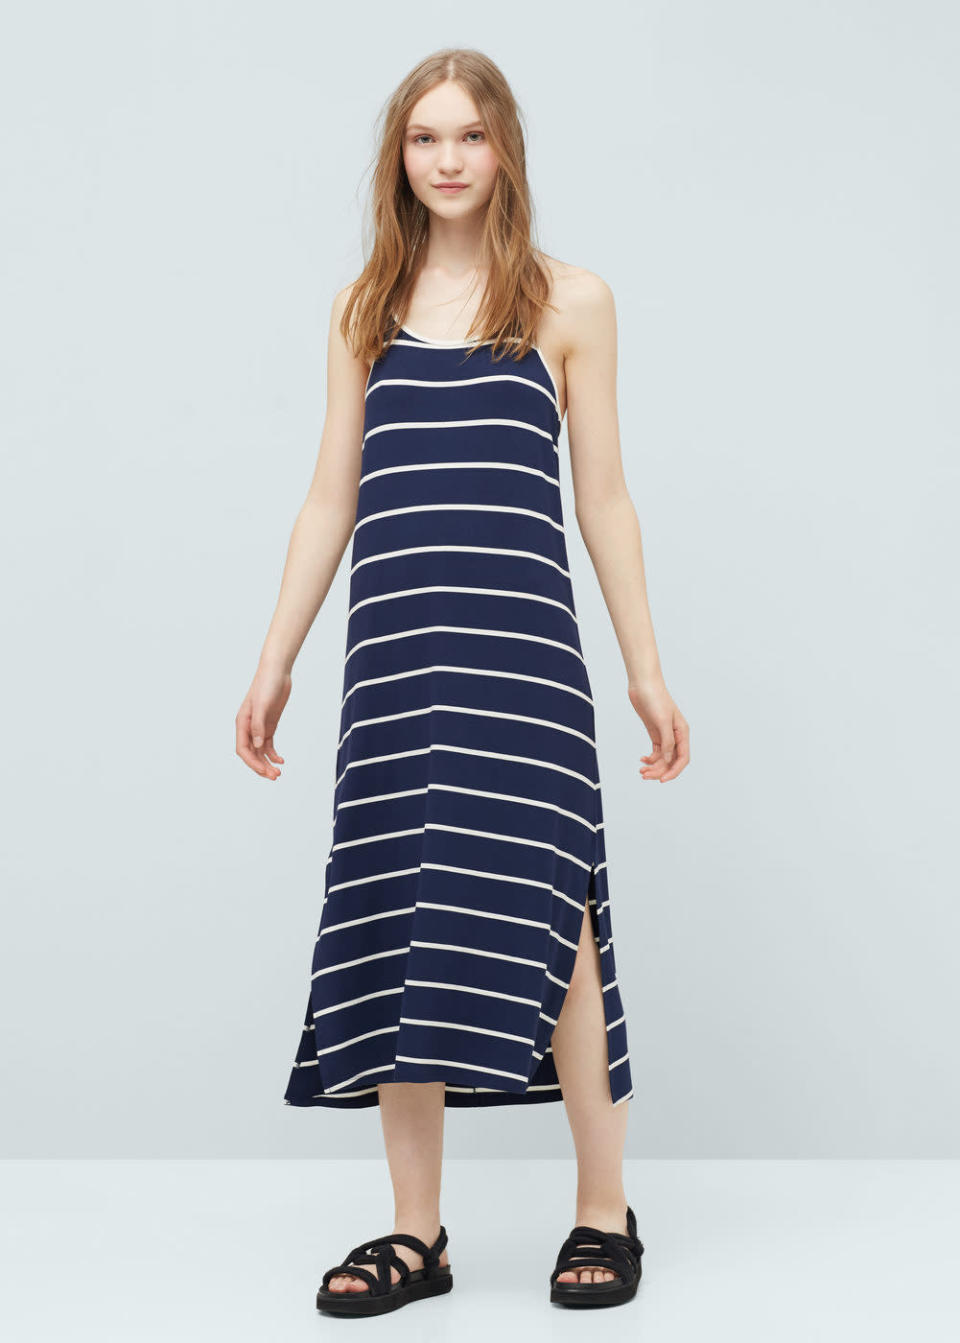 Flowy Striped Dress